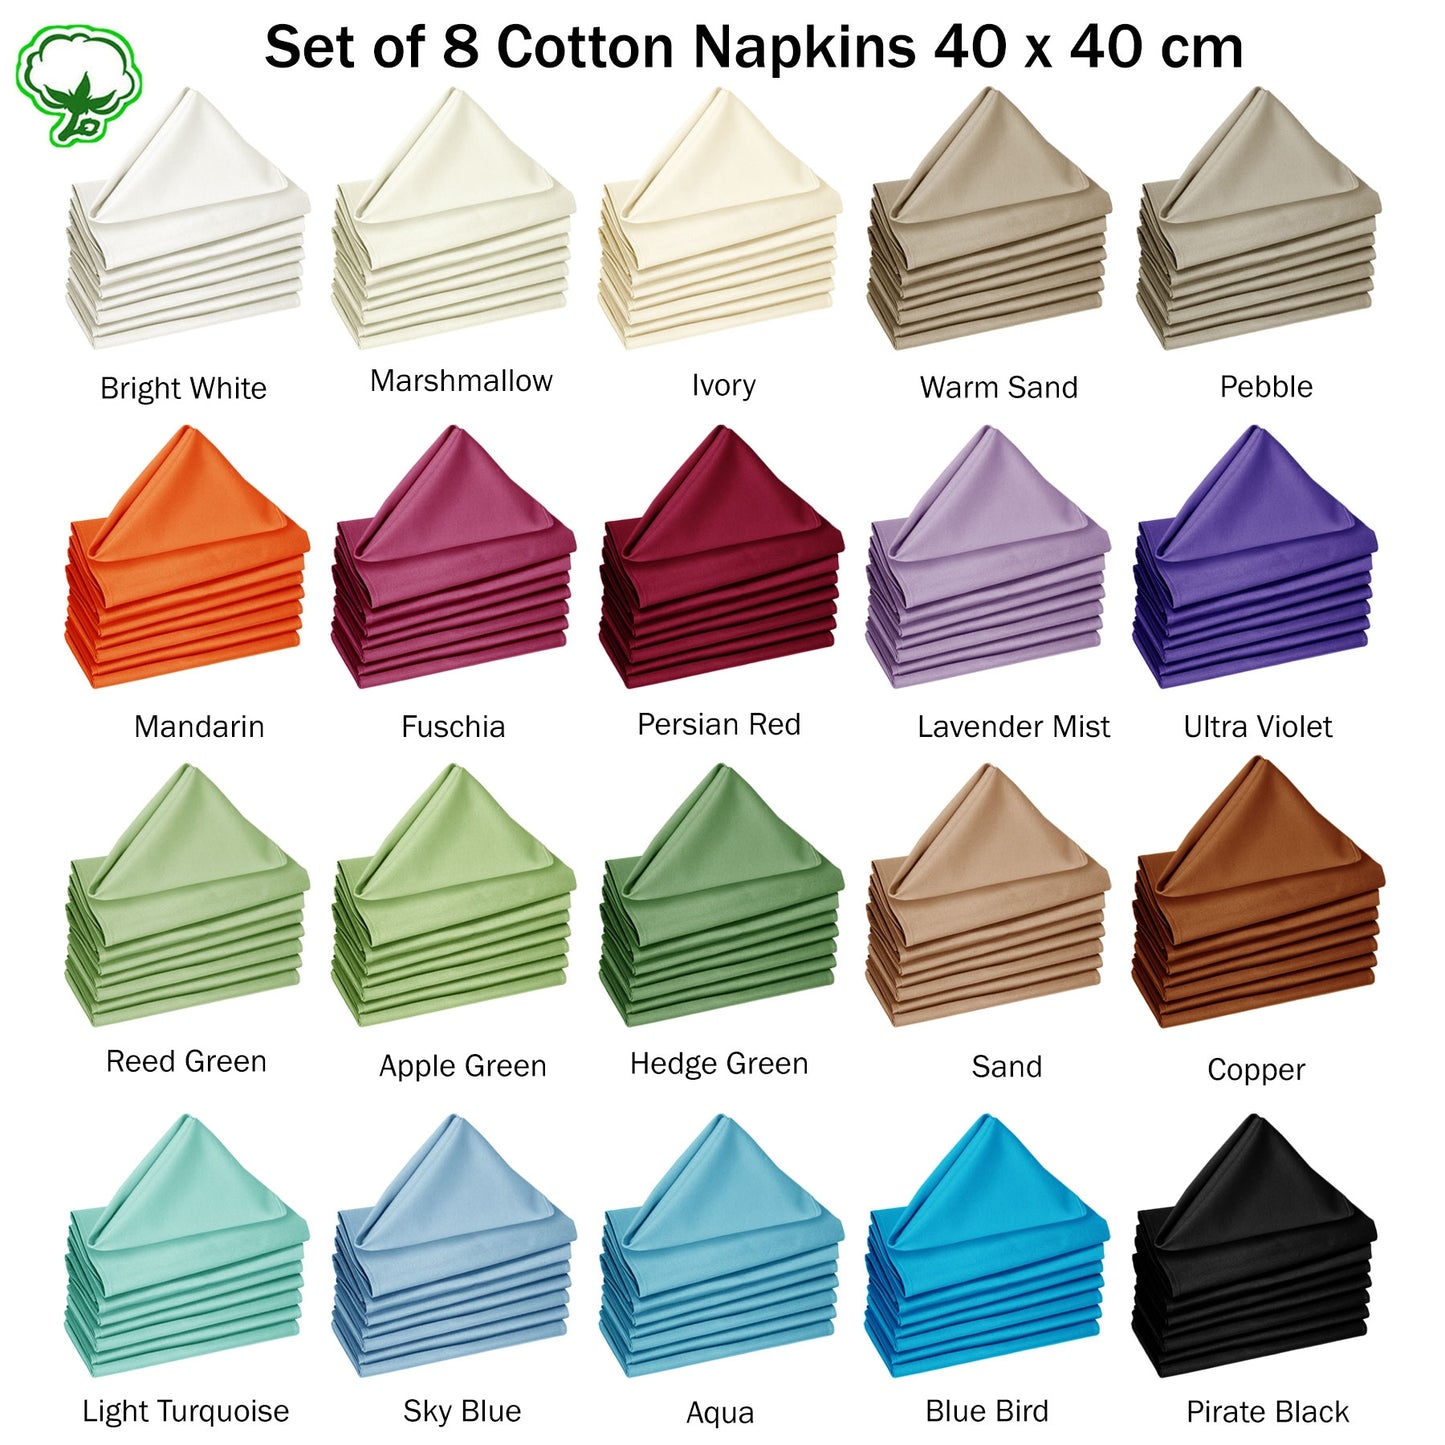 Hoydu Set of 8 Cotton Napkins Light Turquoise